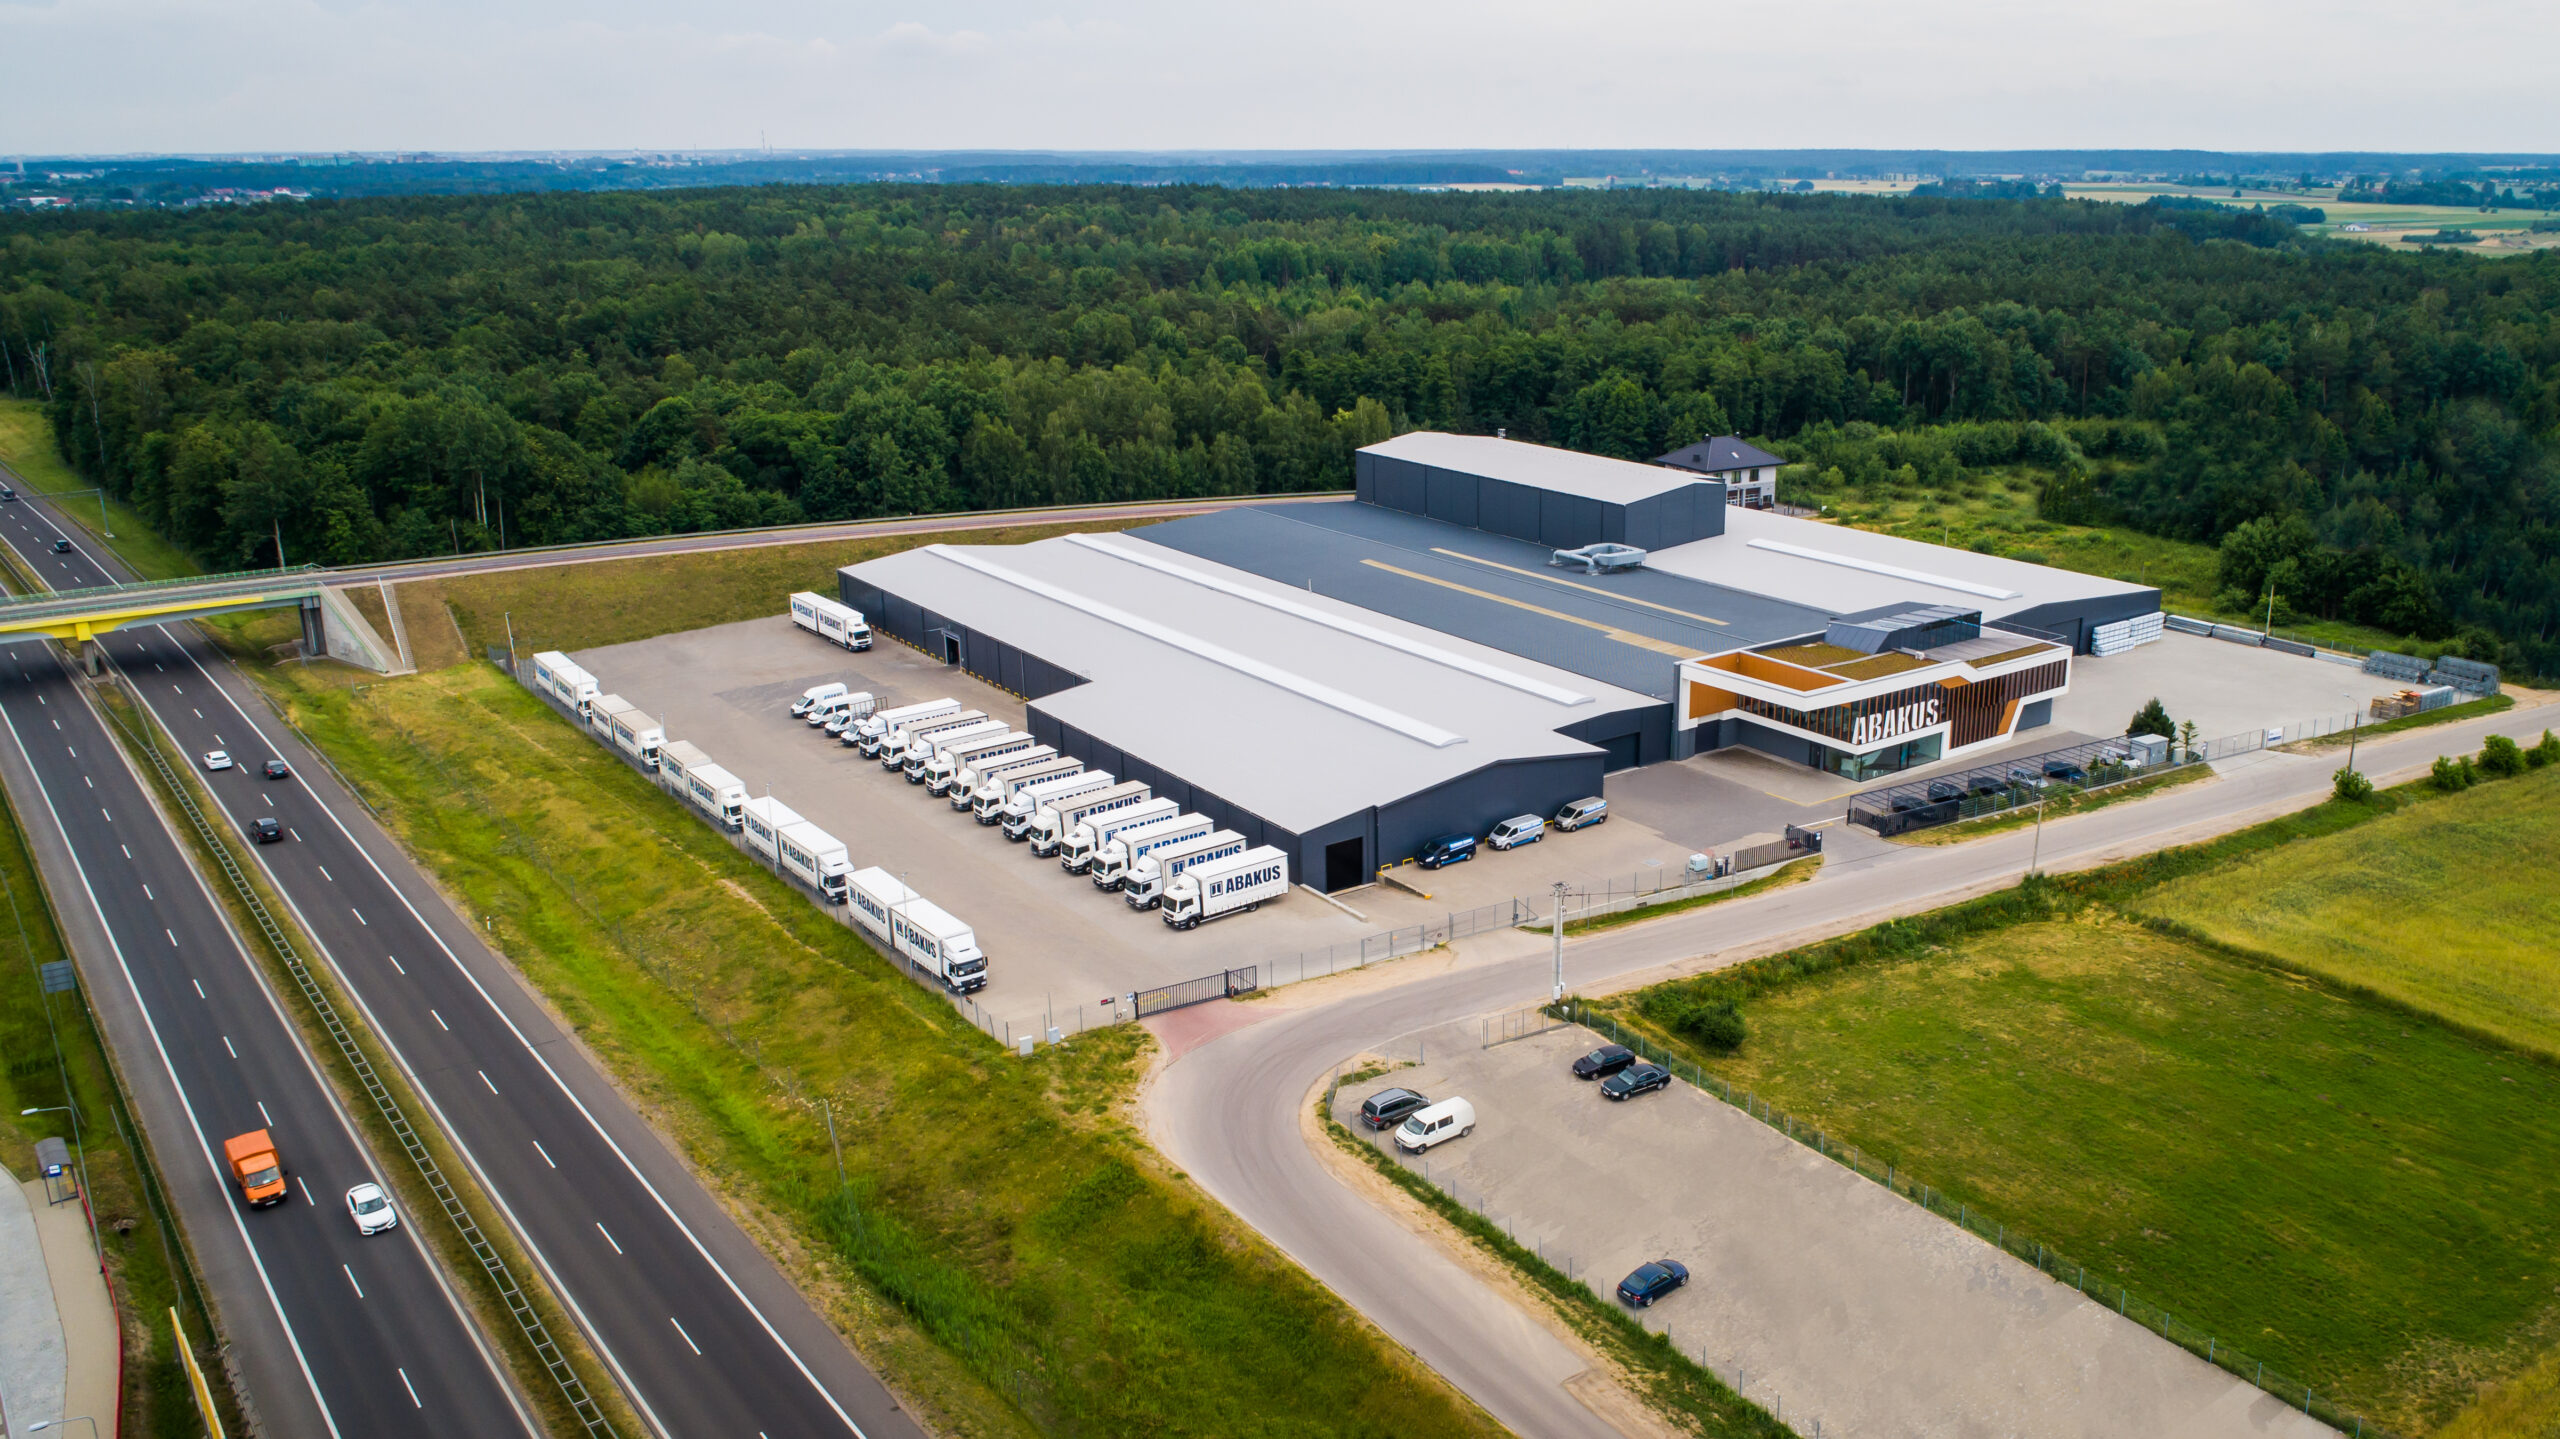 Jak działa jeden z największych parków maszynowych w Europie Abakus Okna S.A.?